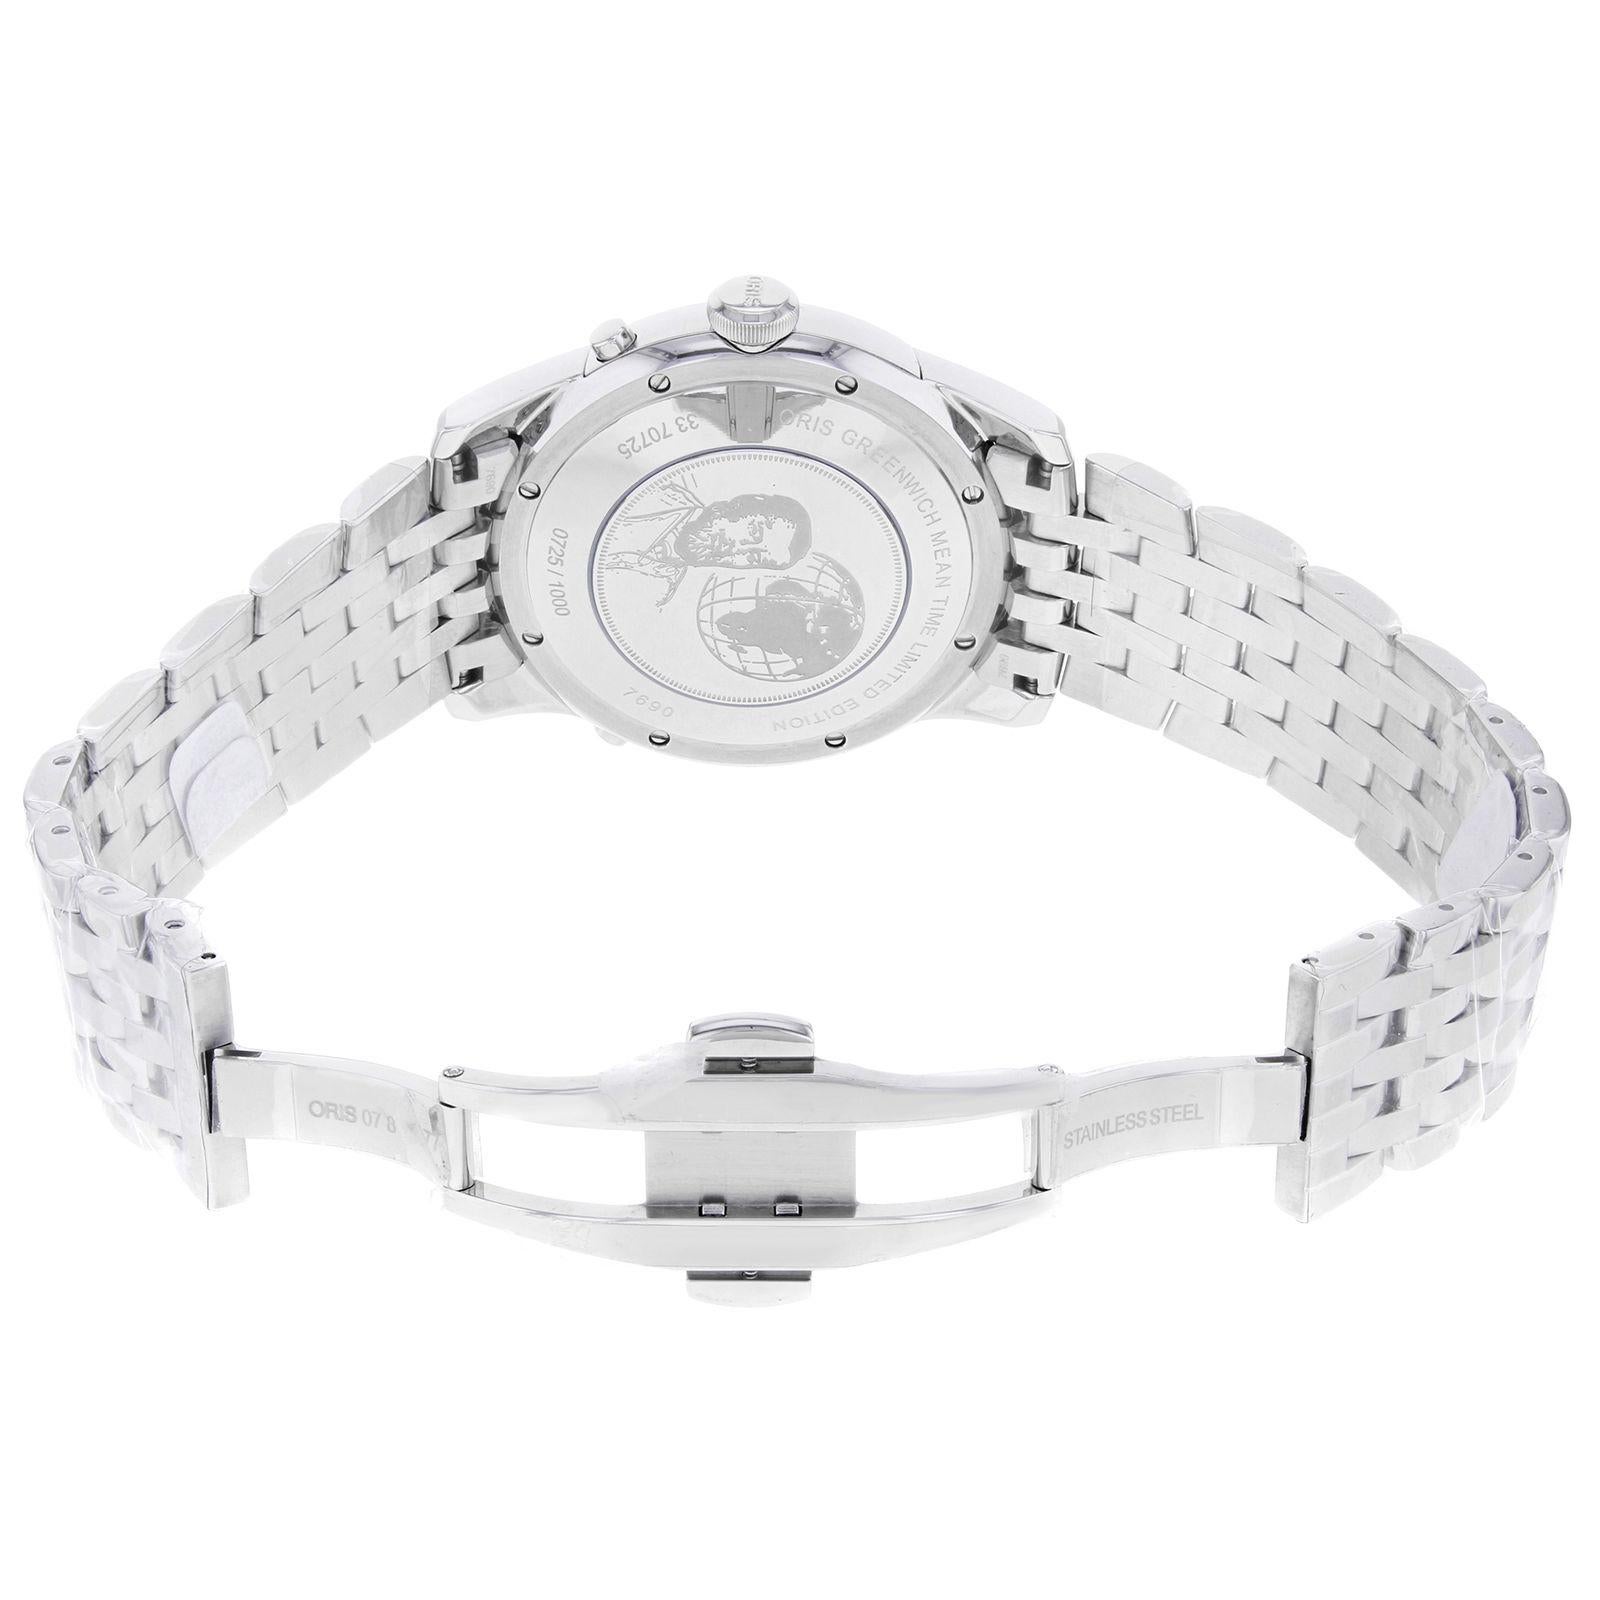 Oris Artelier Steel Silver Limited Edition Automatic Men's Watch 690 7690 4081 3